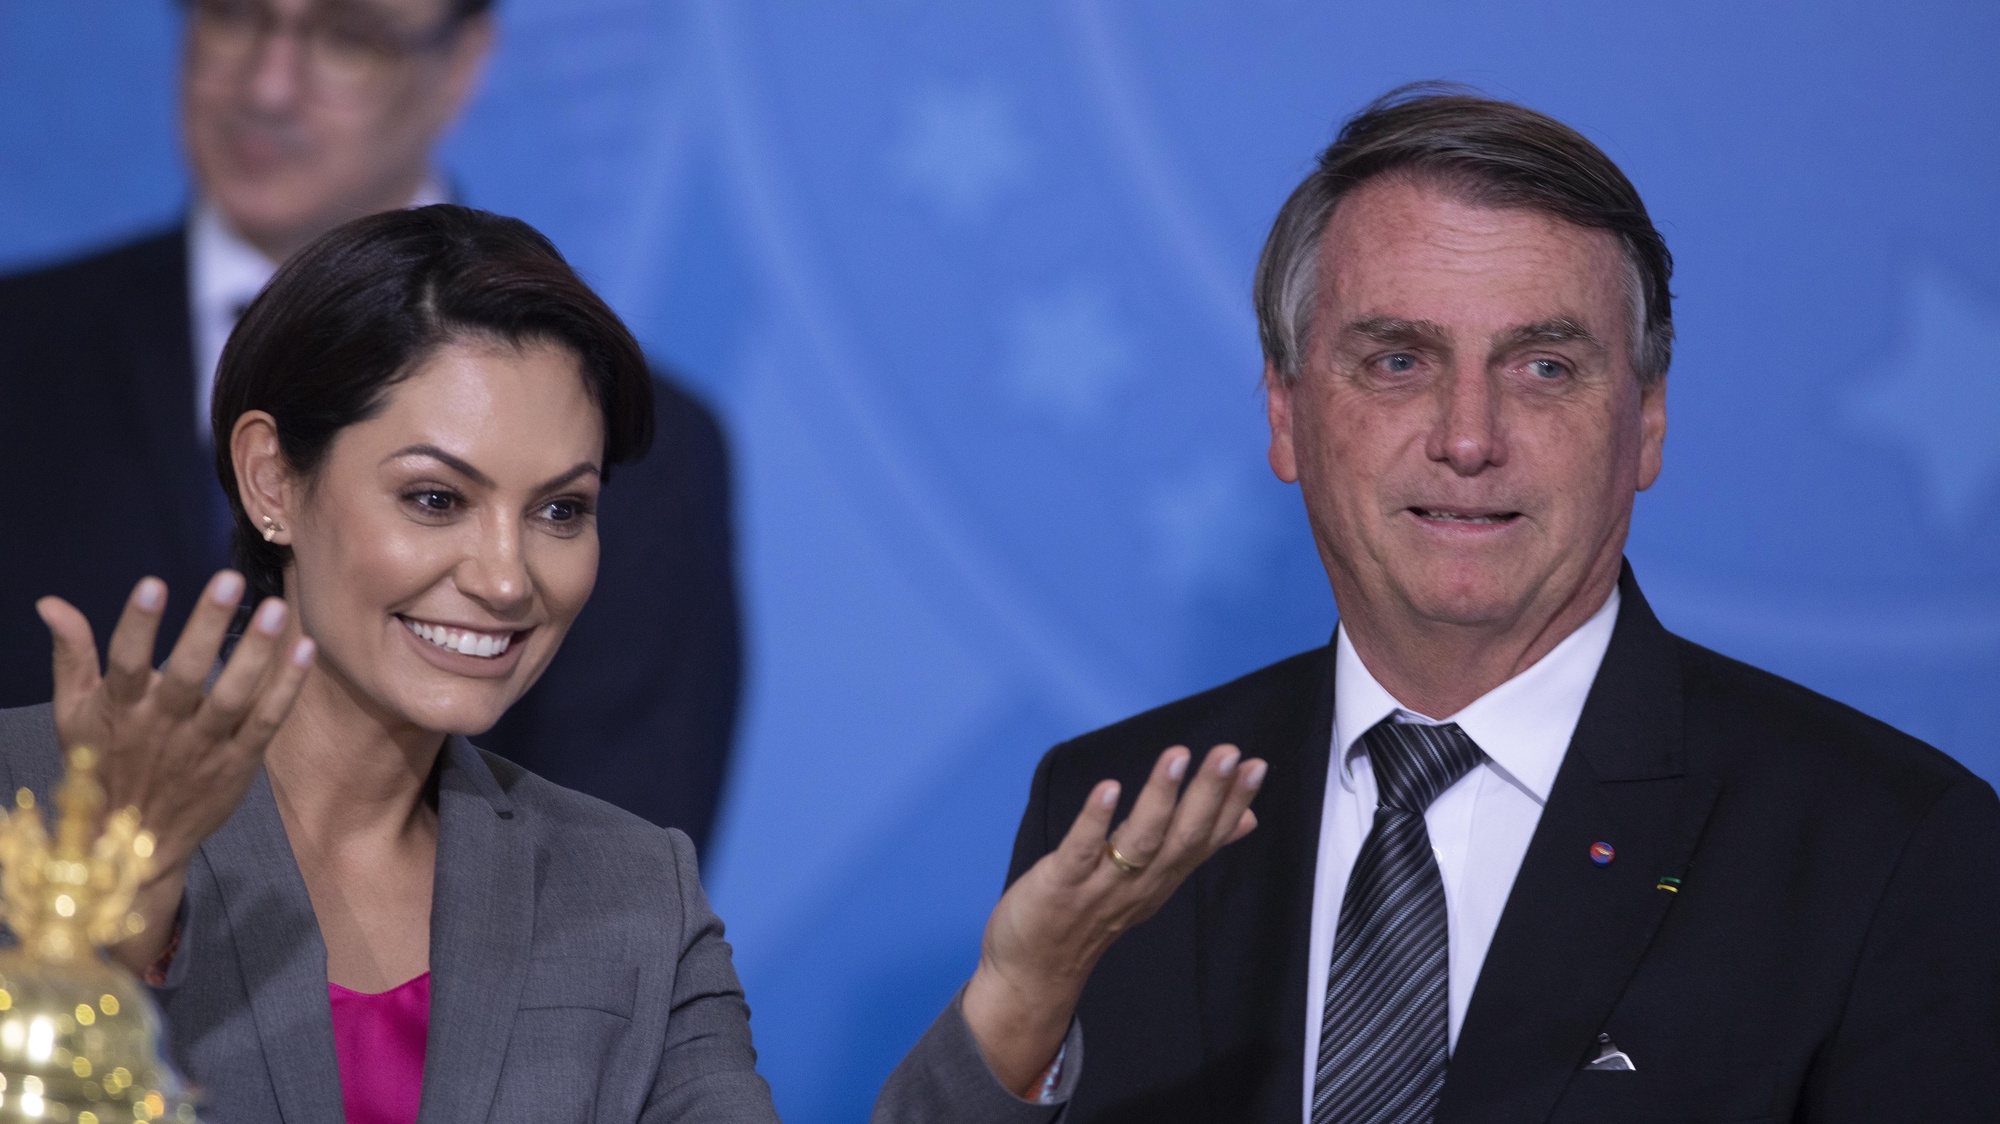 A construção do reinado de Michelle nas redes bolsonaristas - Agência  Pública